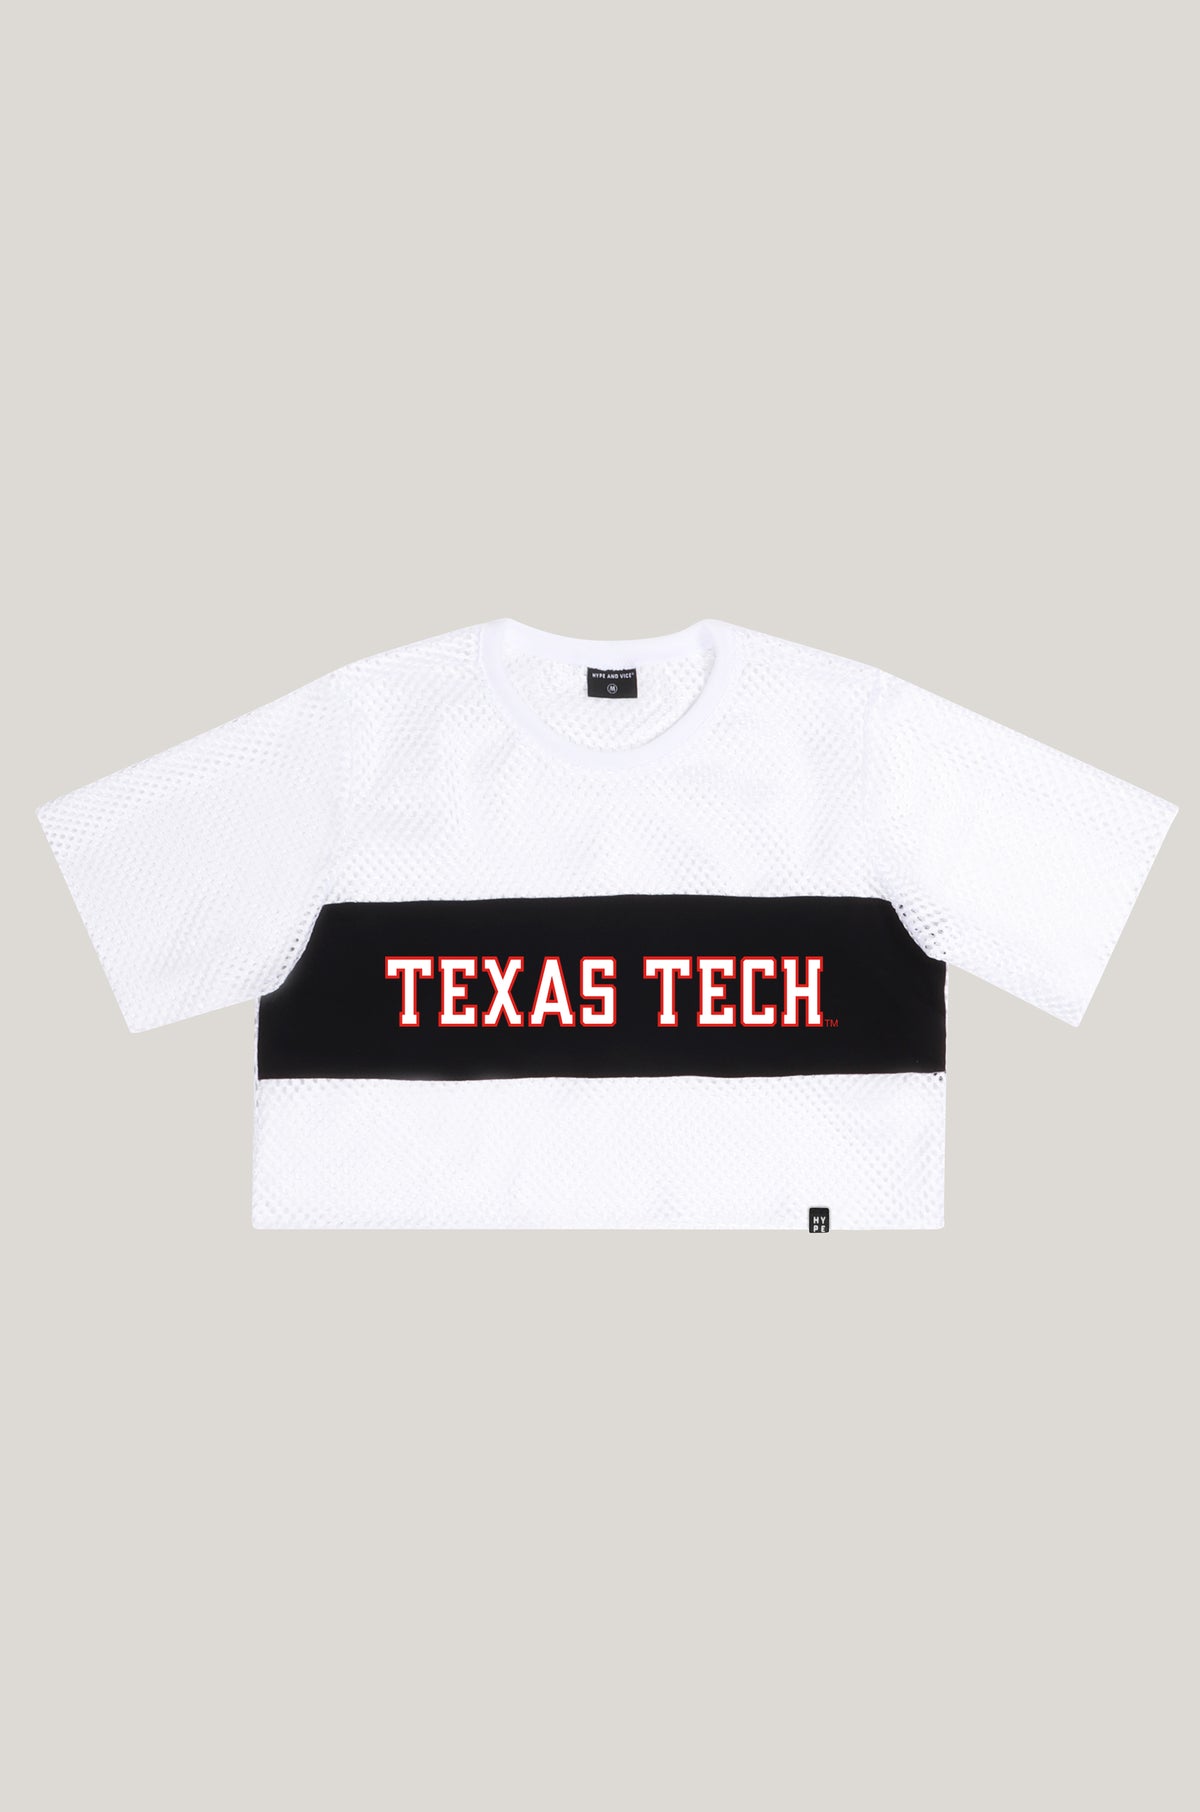 Texas Tech Mesh Tee